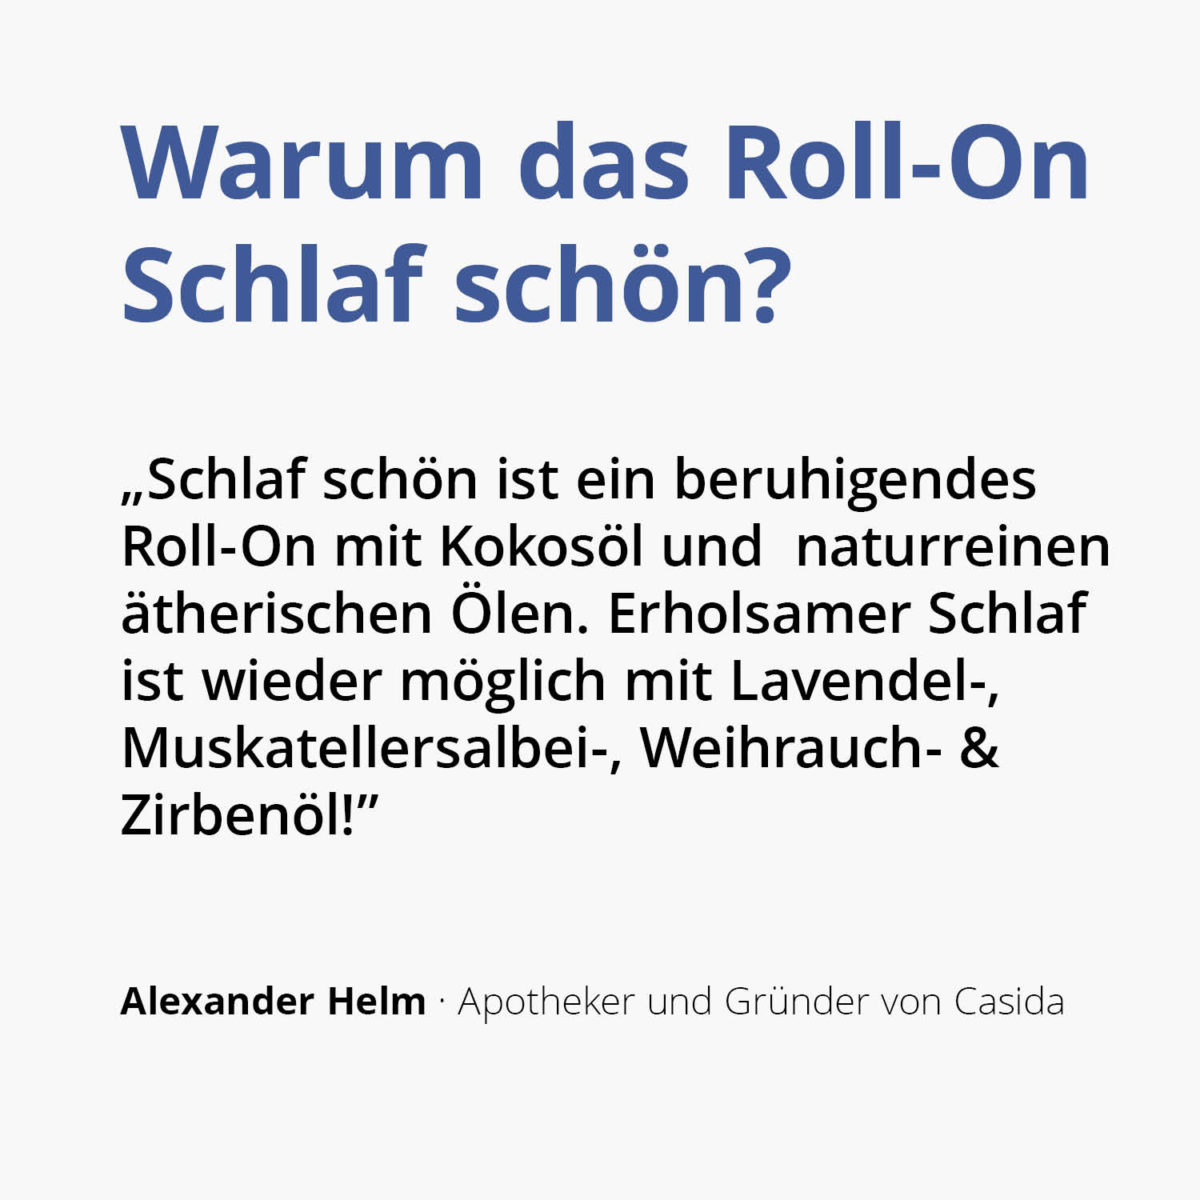 Casida Roll-on Schlaf schön 18196972 Apotheke PZN Lavendel Zirbe Weihrauch und Muskatellersalbei Kokos2 1